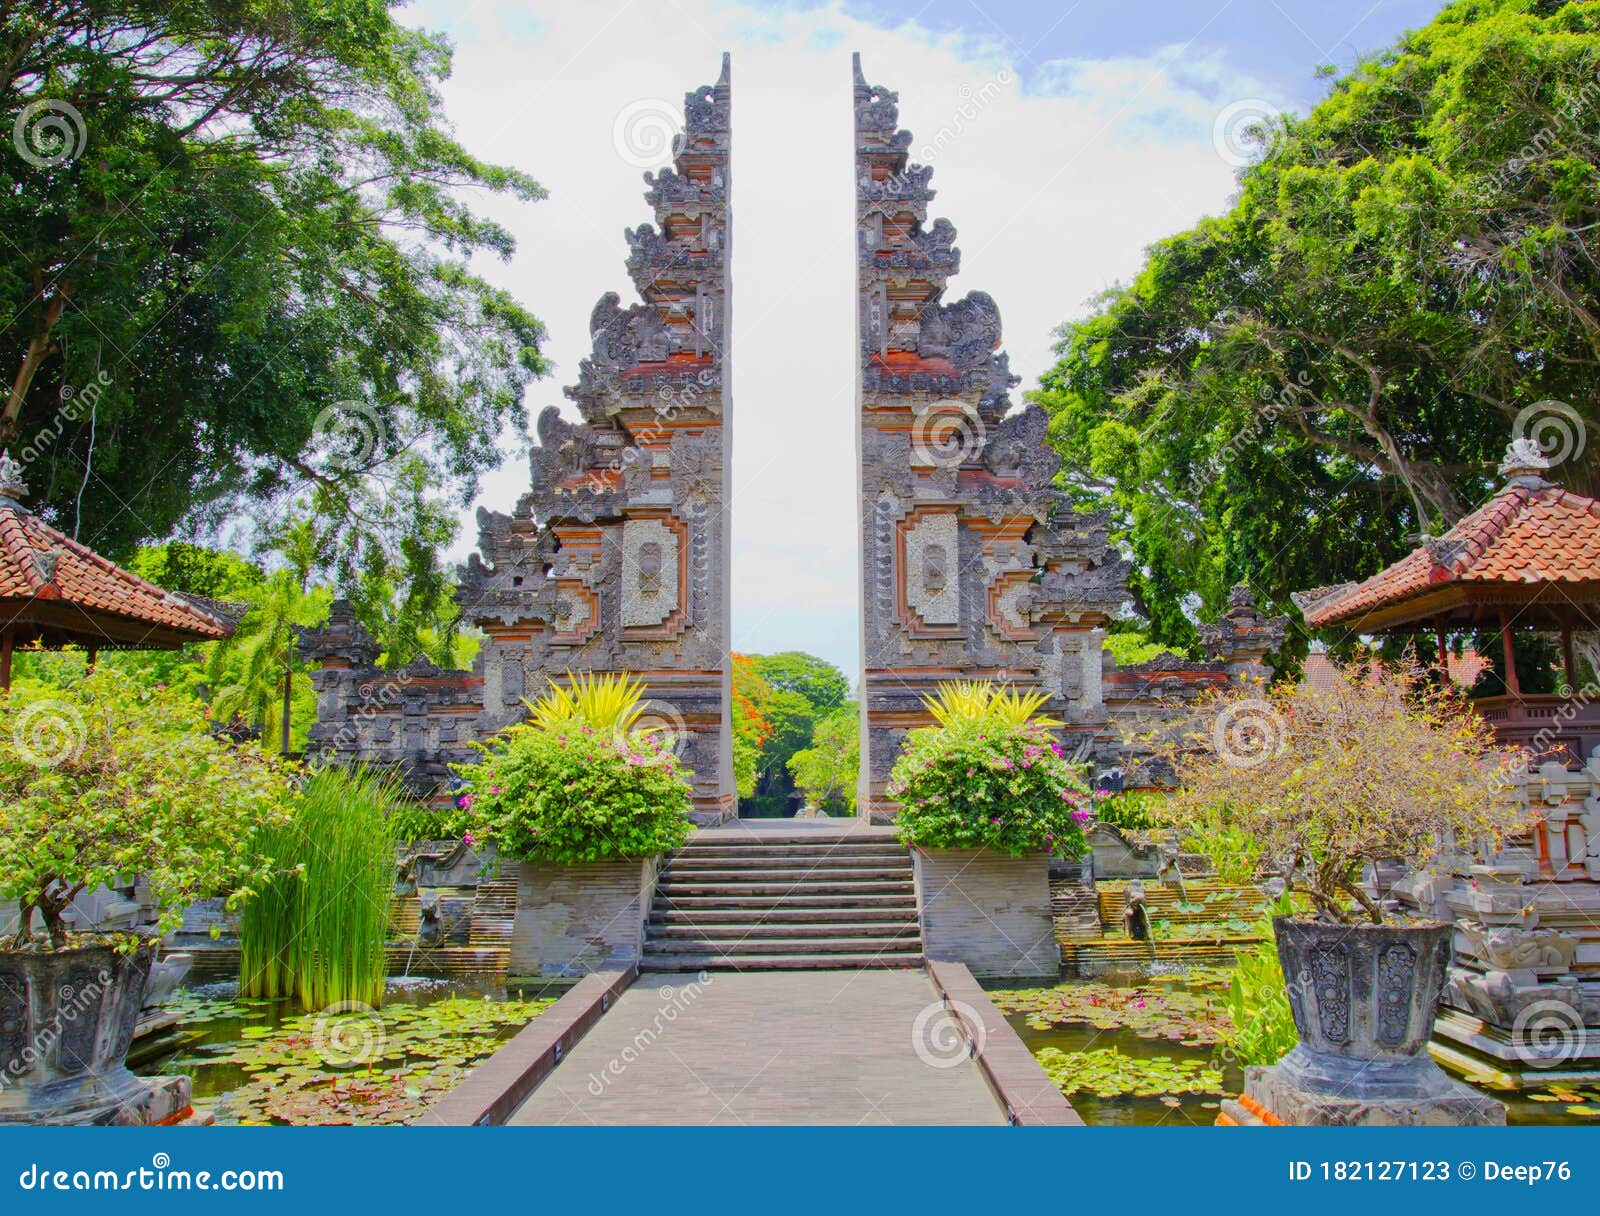 temple in nusa dua  in bali island in  indonesia